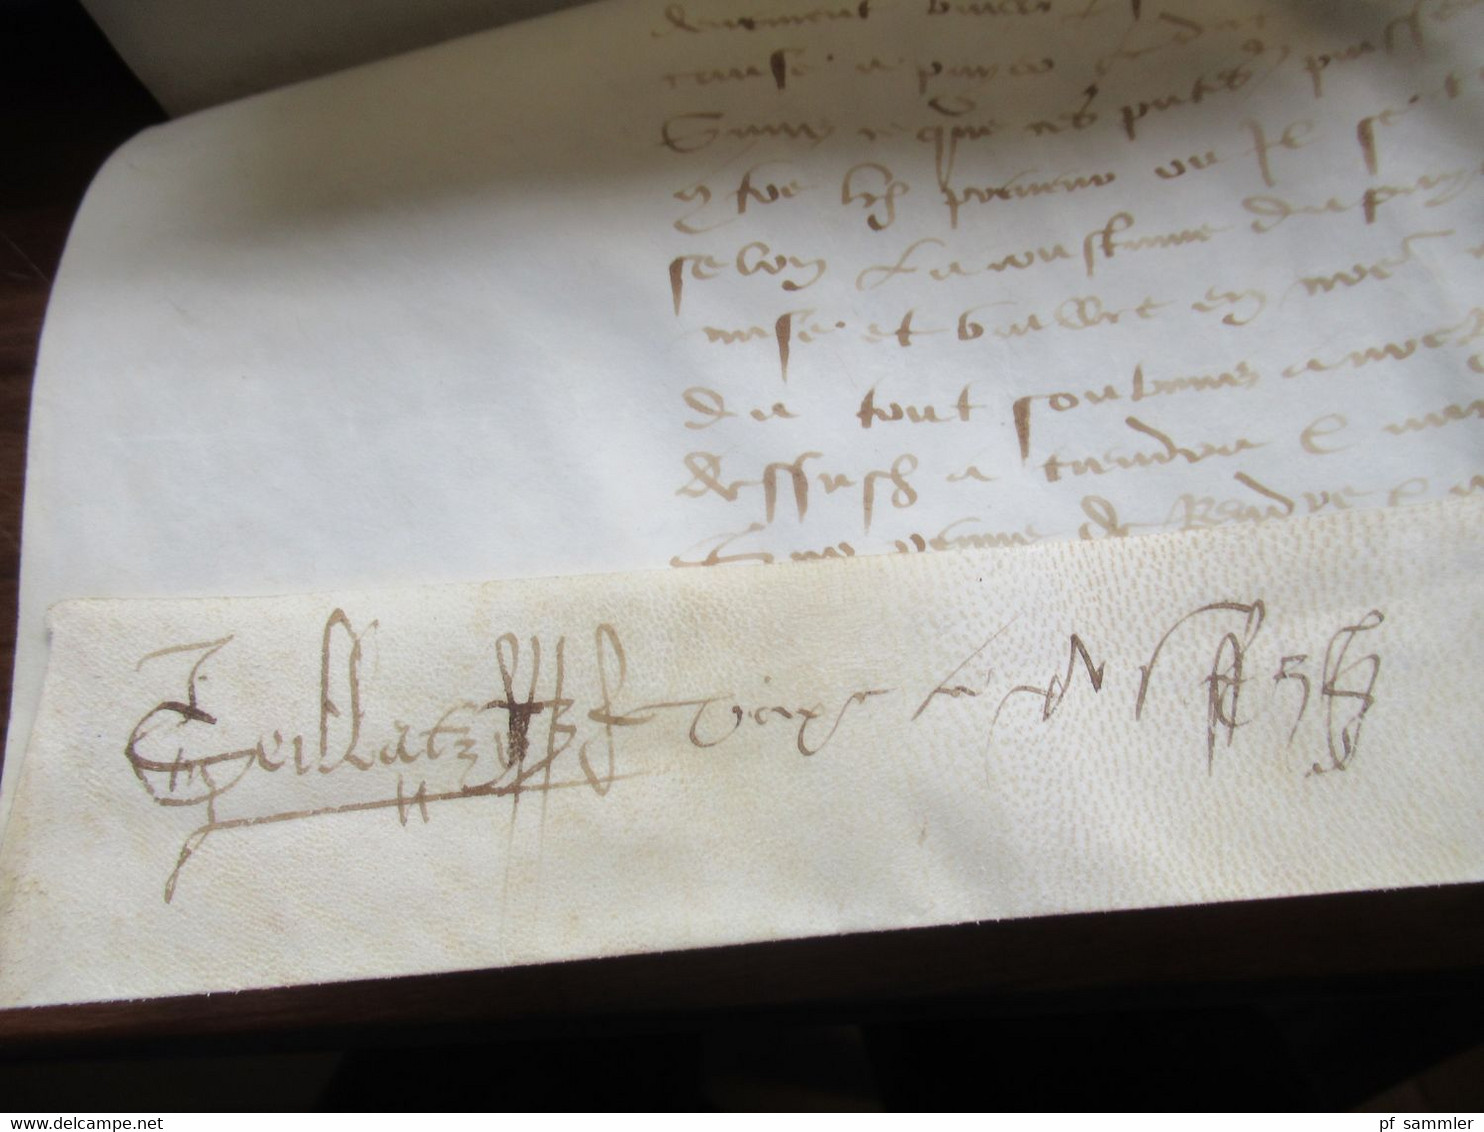 Frankreich uralter Brief / Dokument auf Leder ?? 15. oder 16. Jahrhundert Schnörkelunterschrift Interessant??